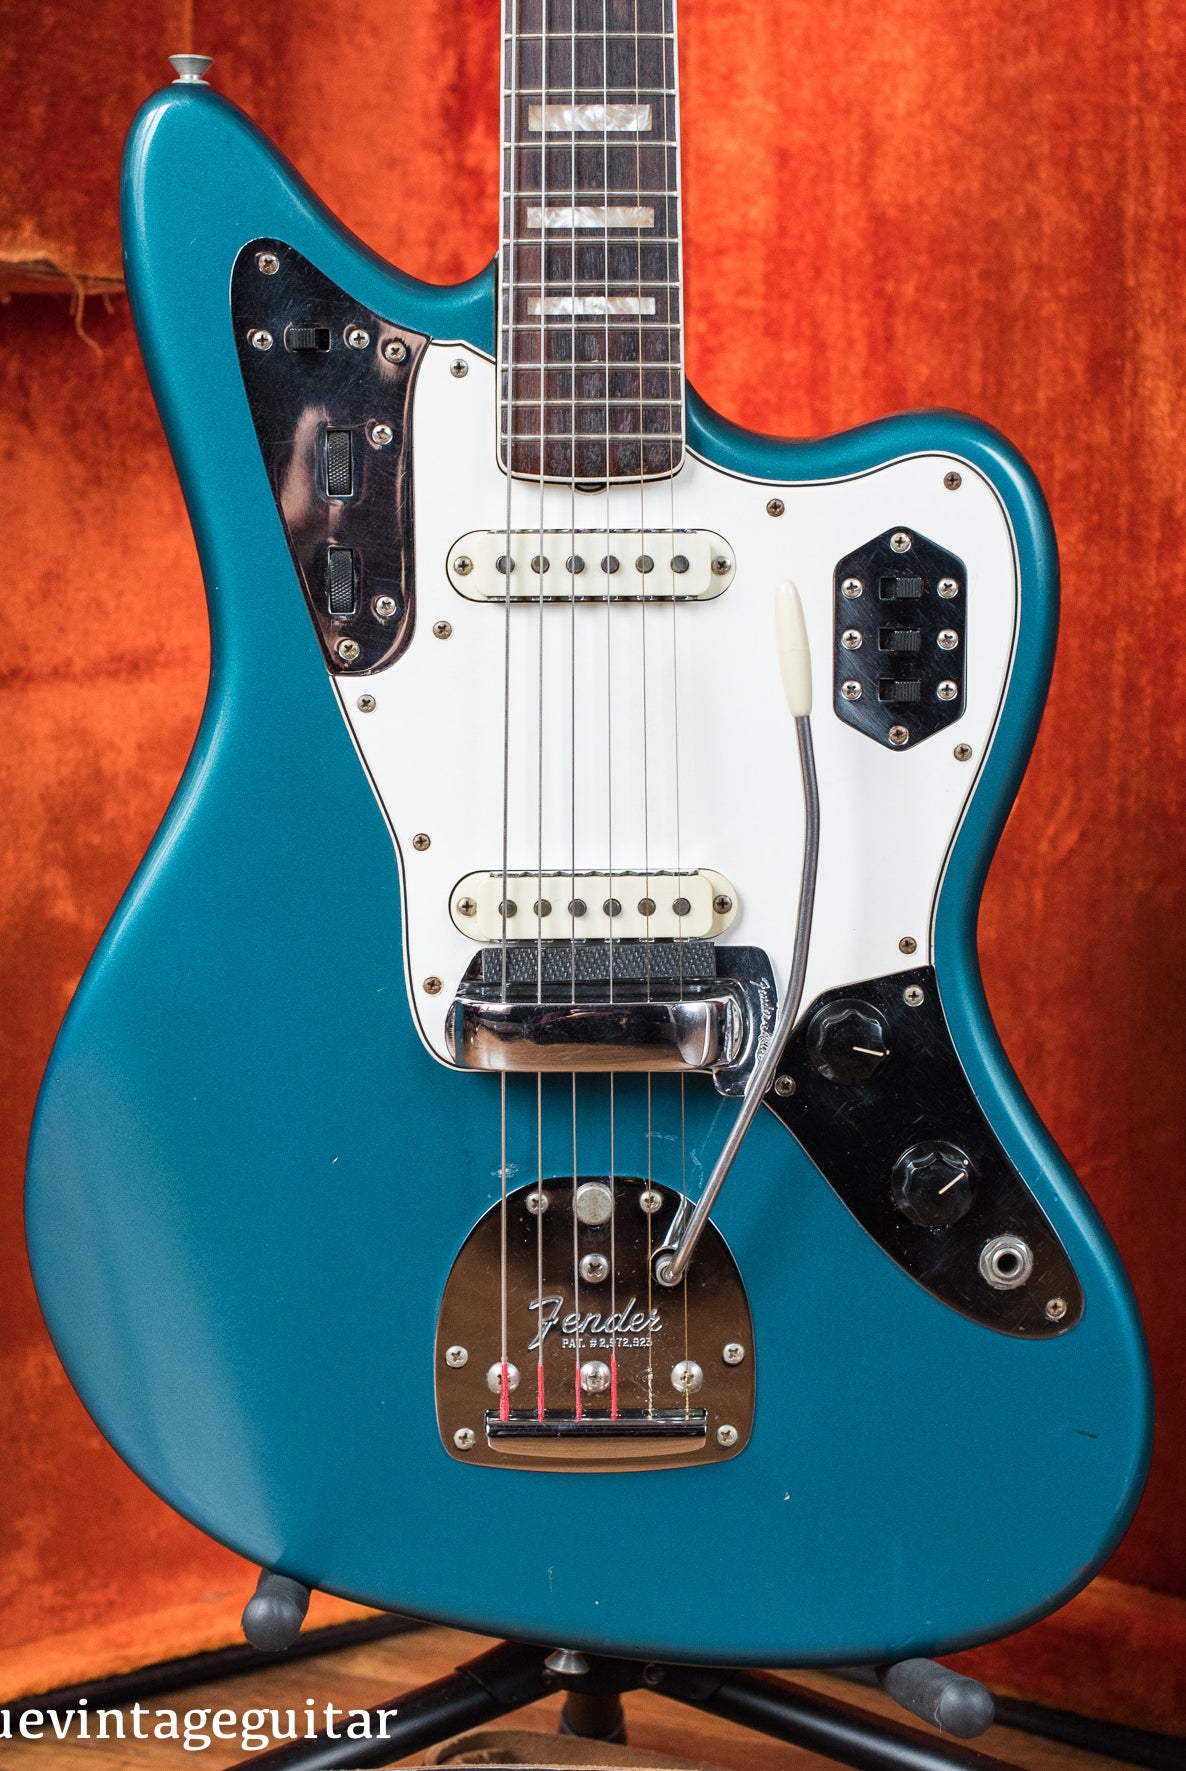 Fender Jaguar 1966 Blue guitar vintage original